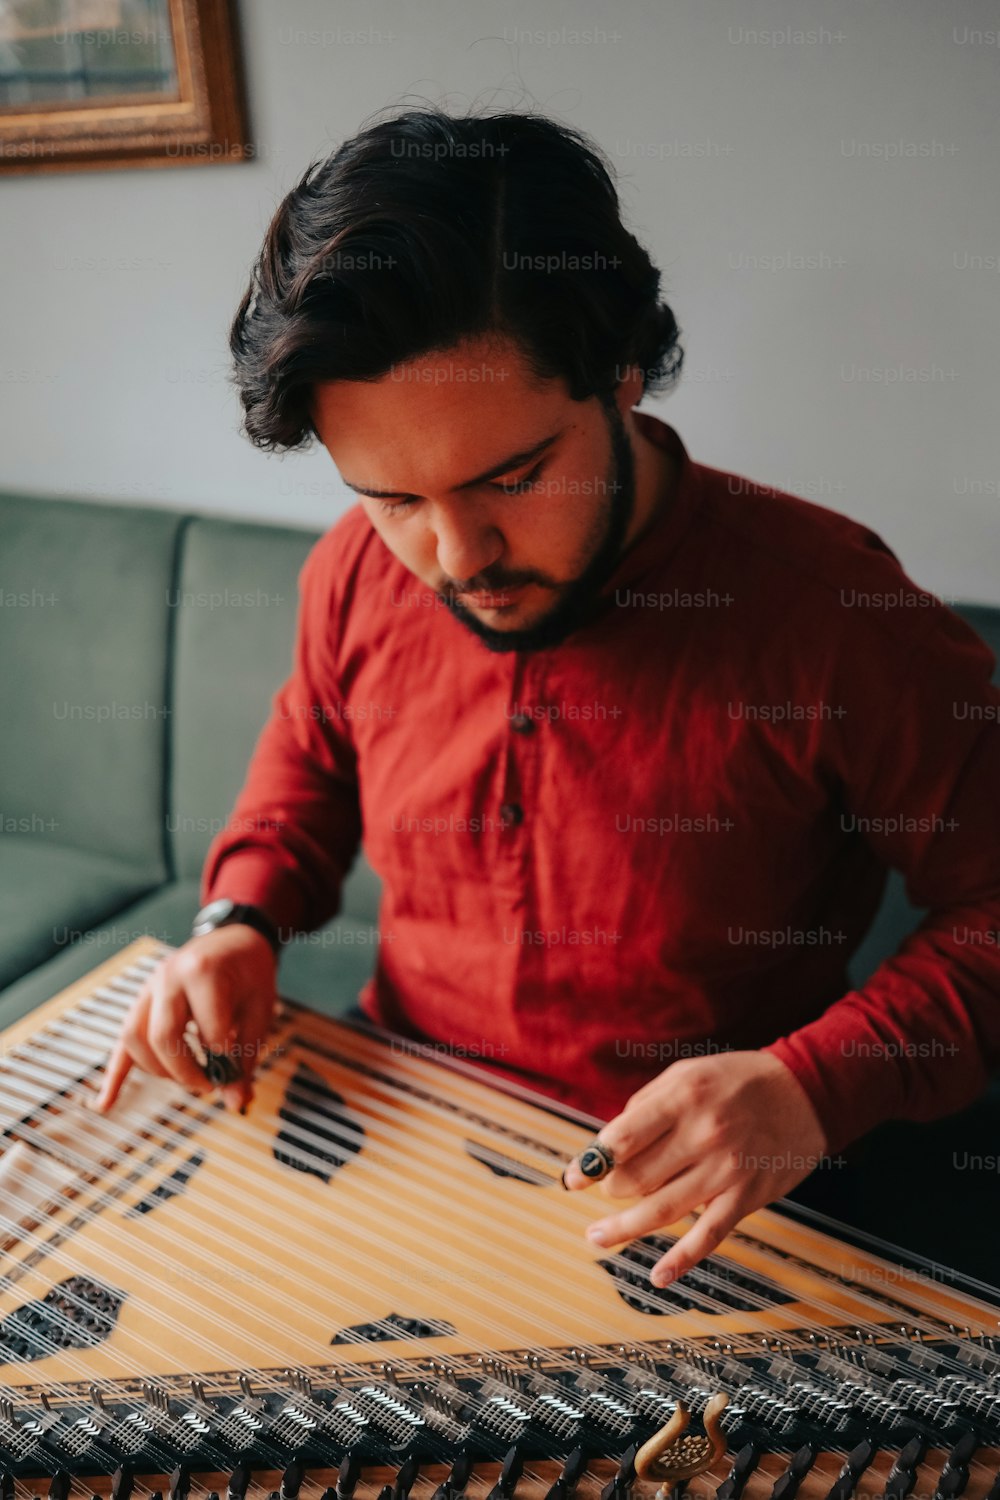 Un uomo con una camicia rossa sta suonando uno strumento musicale